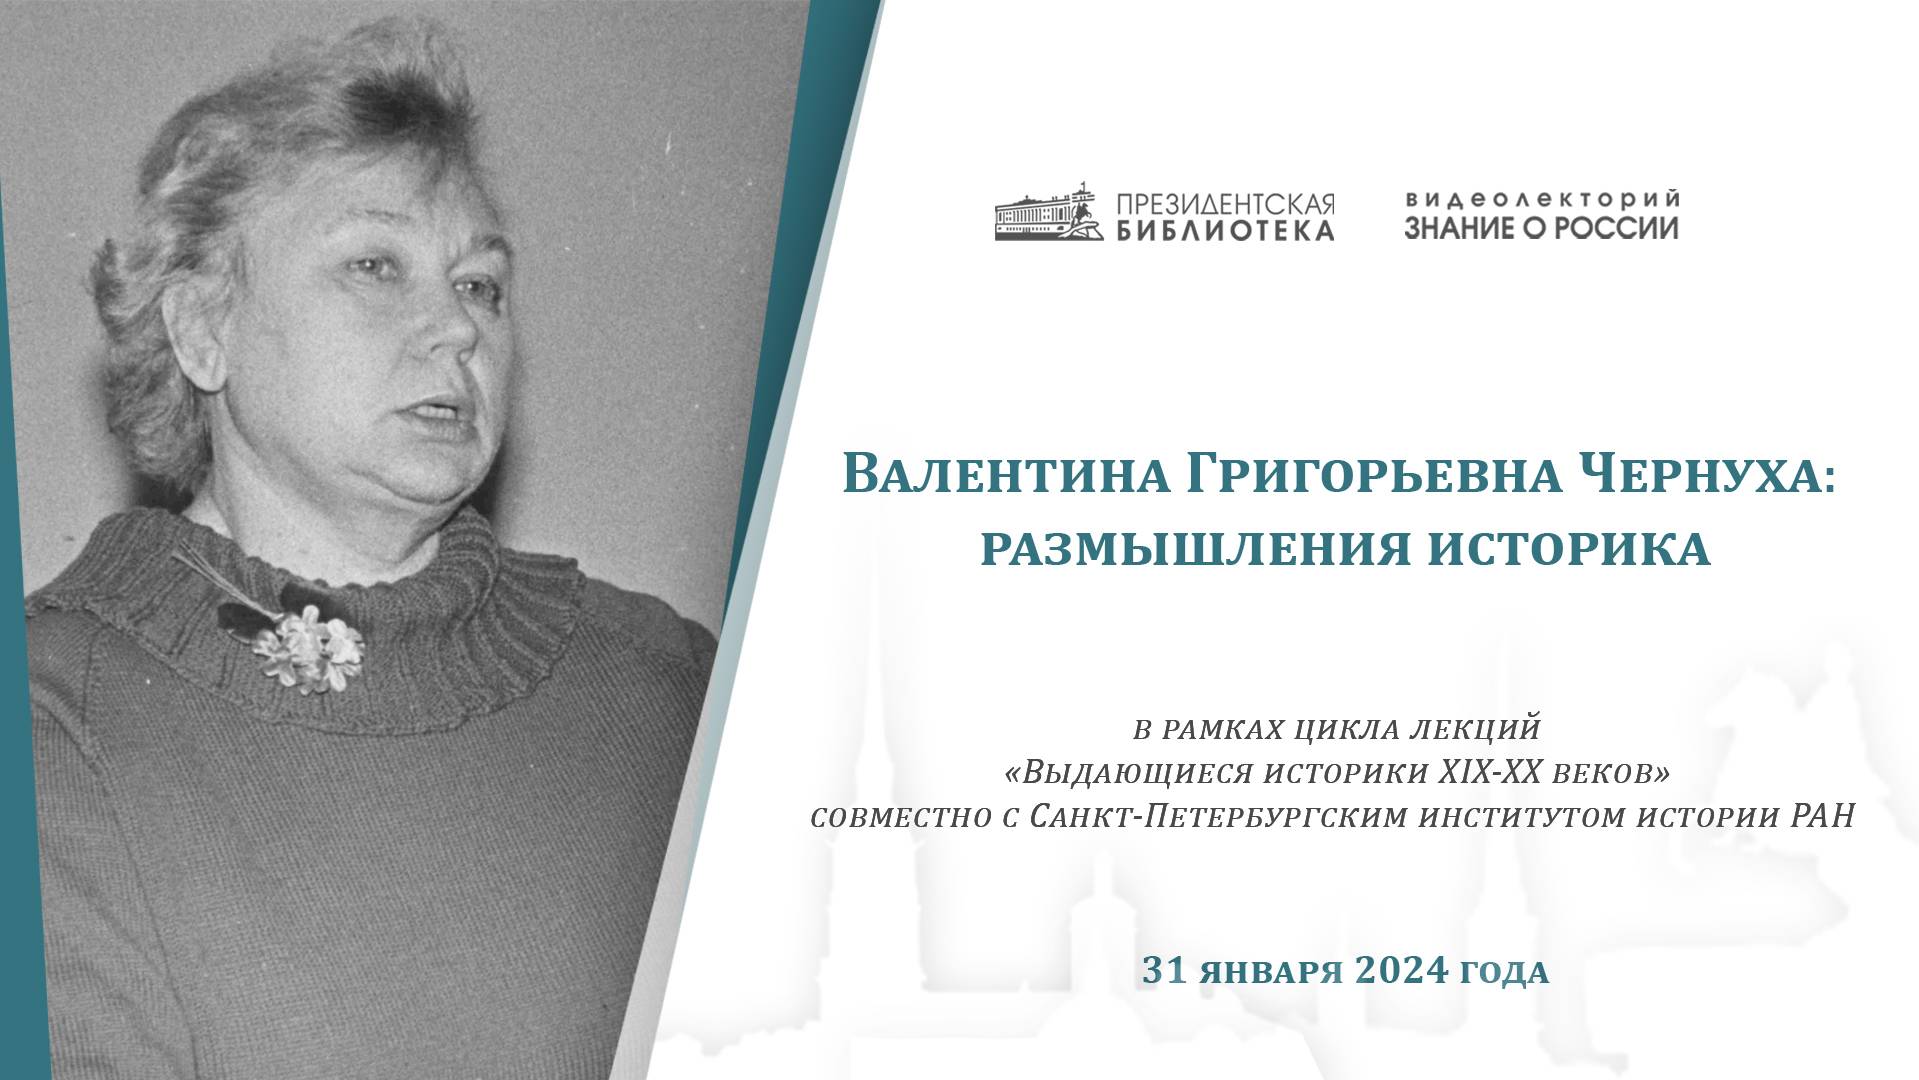 Видеолекция «Валентина Григорьевна Чернуха: размышления историка»